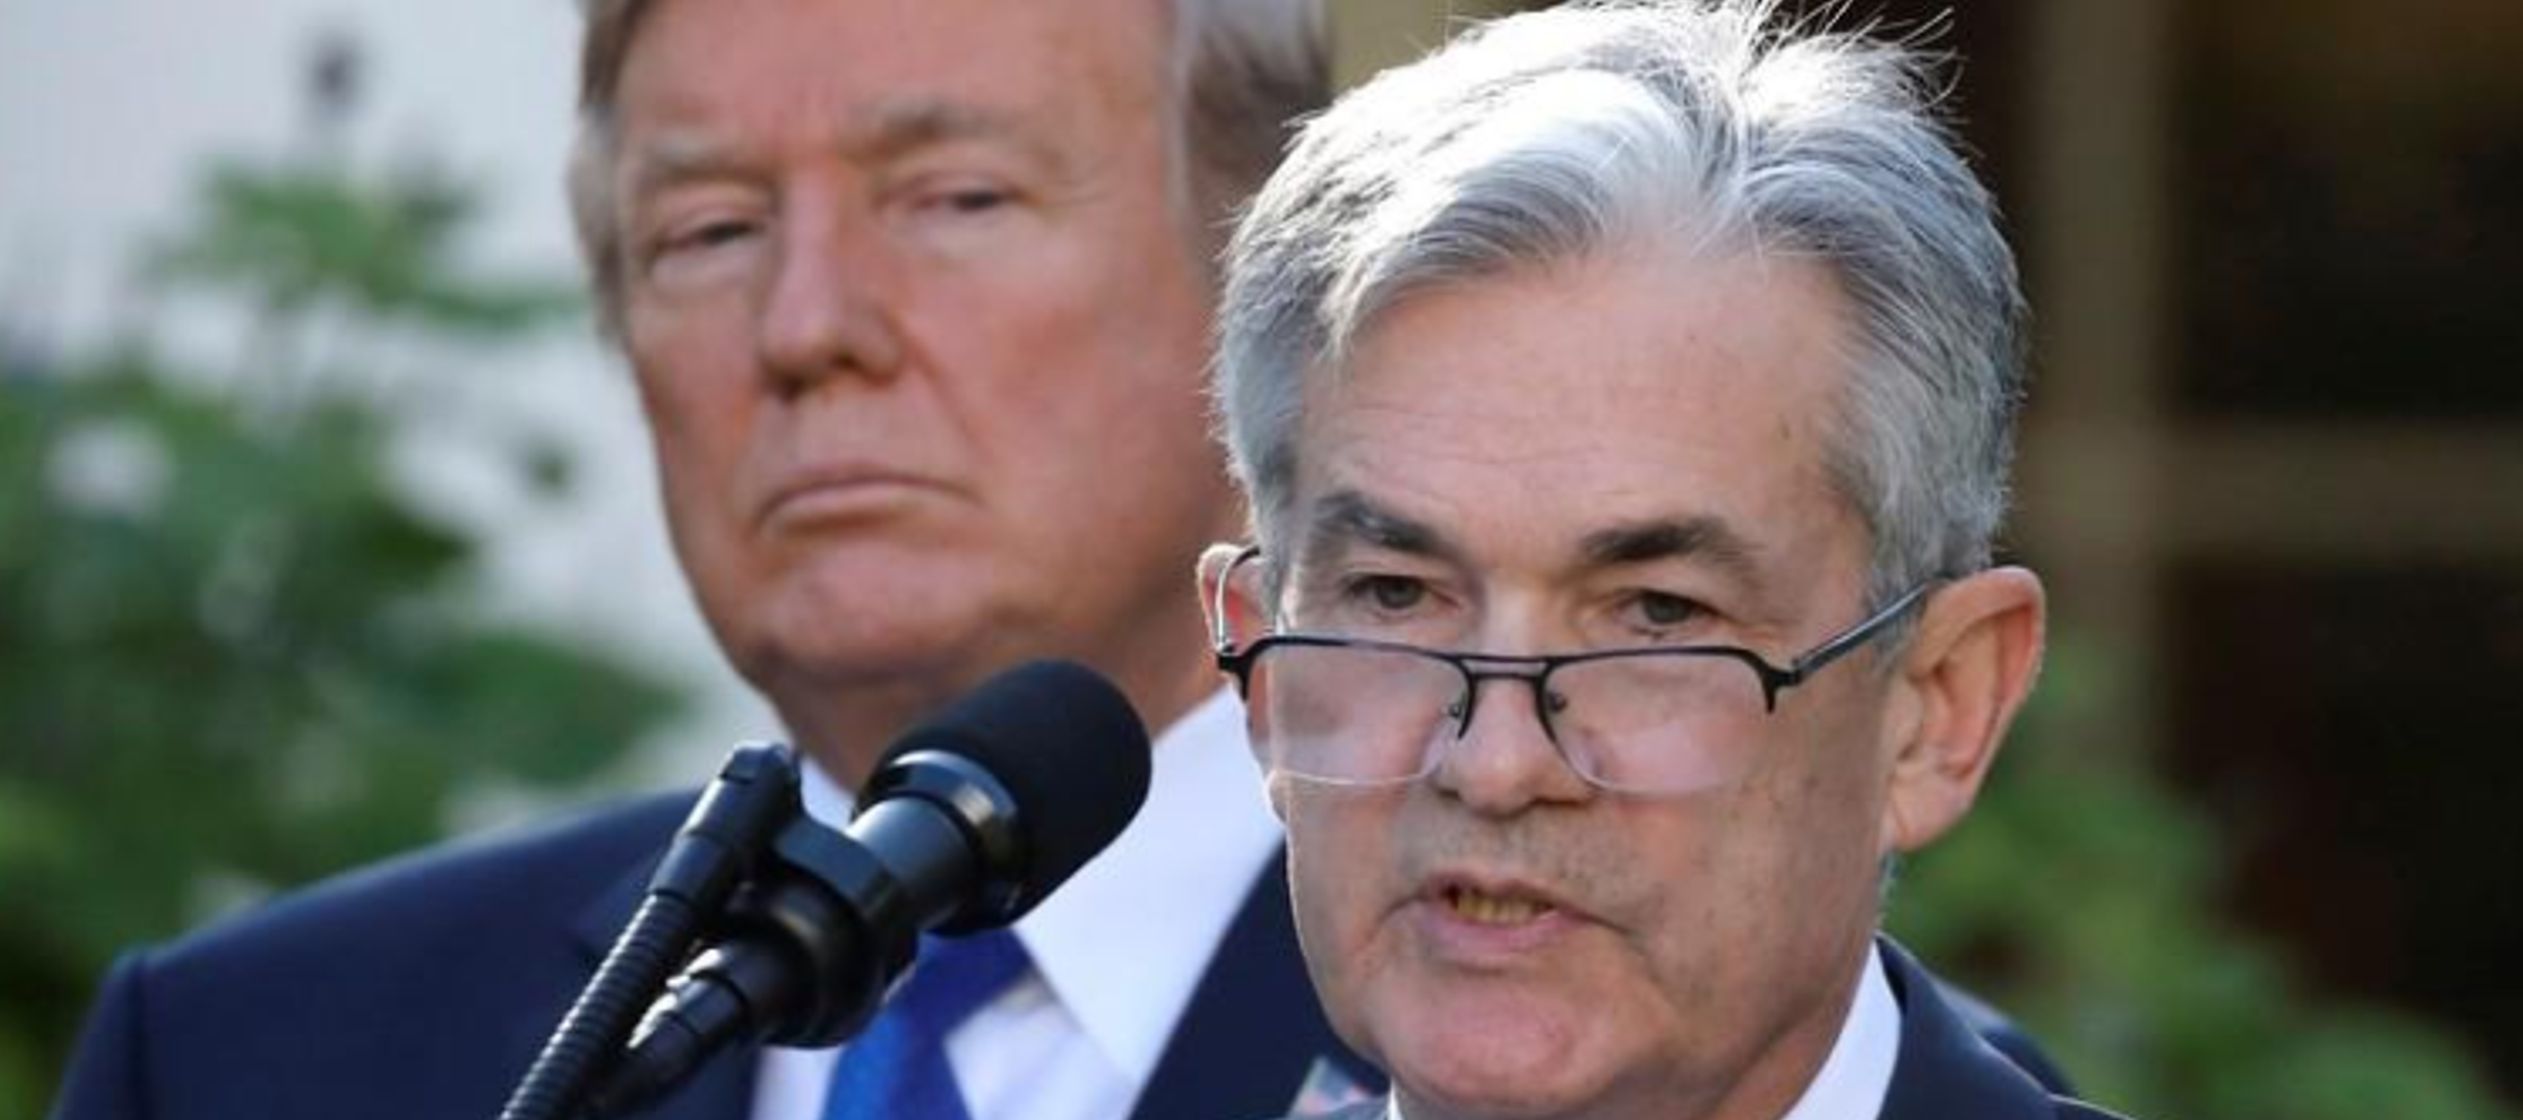 Trump ha atacado con frecuencia a Powell, quien asumió como presidente de la Fed en febrero...